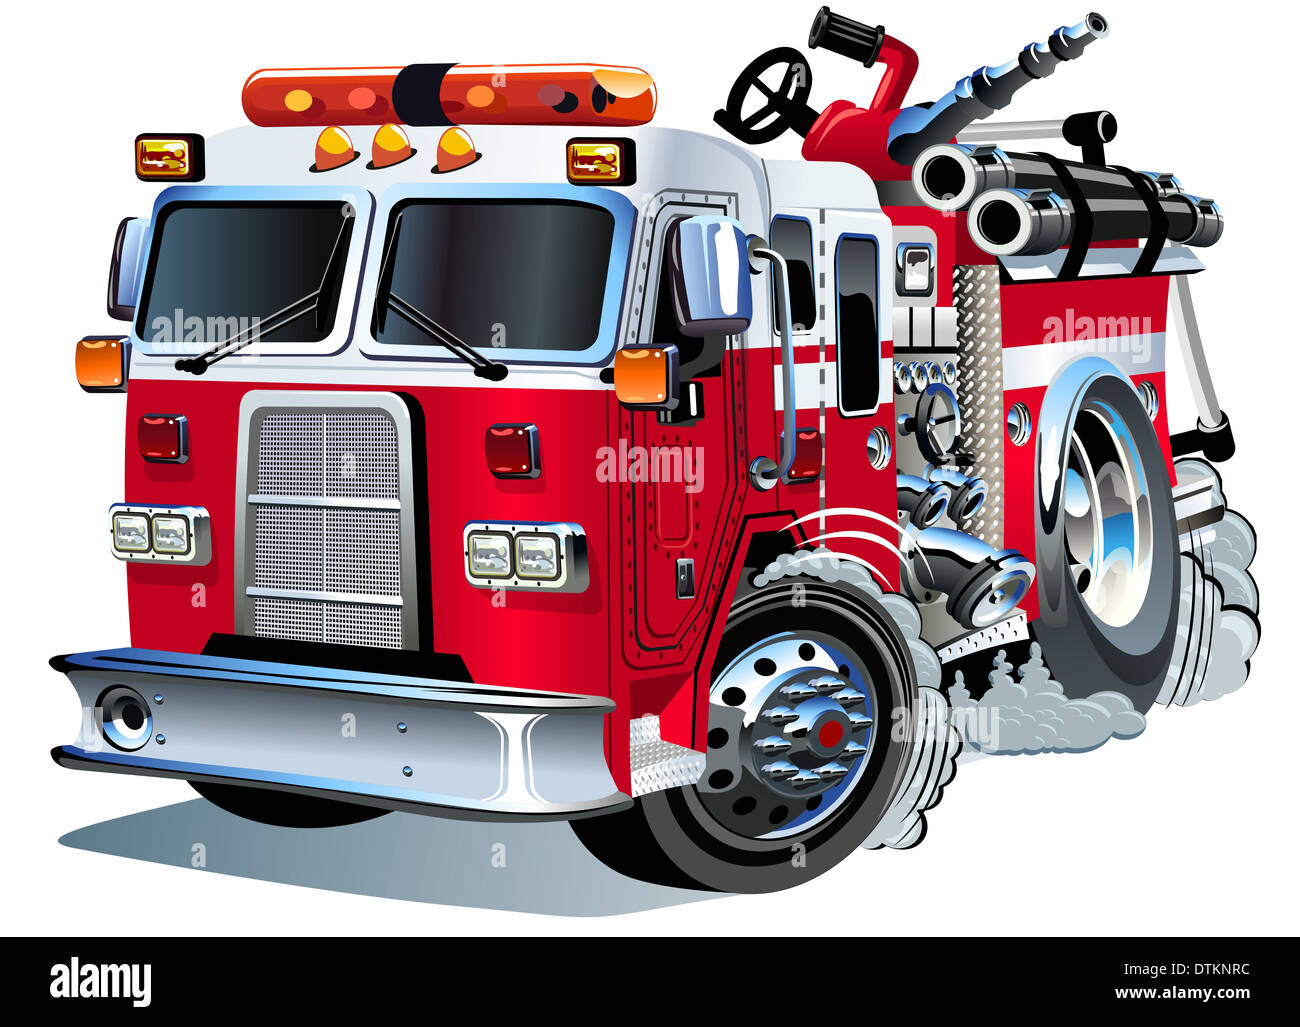 de bomberos dibujos animados de - Alamy